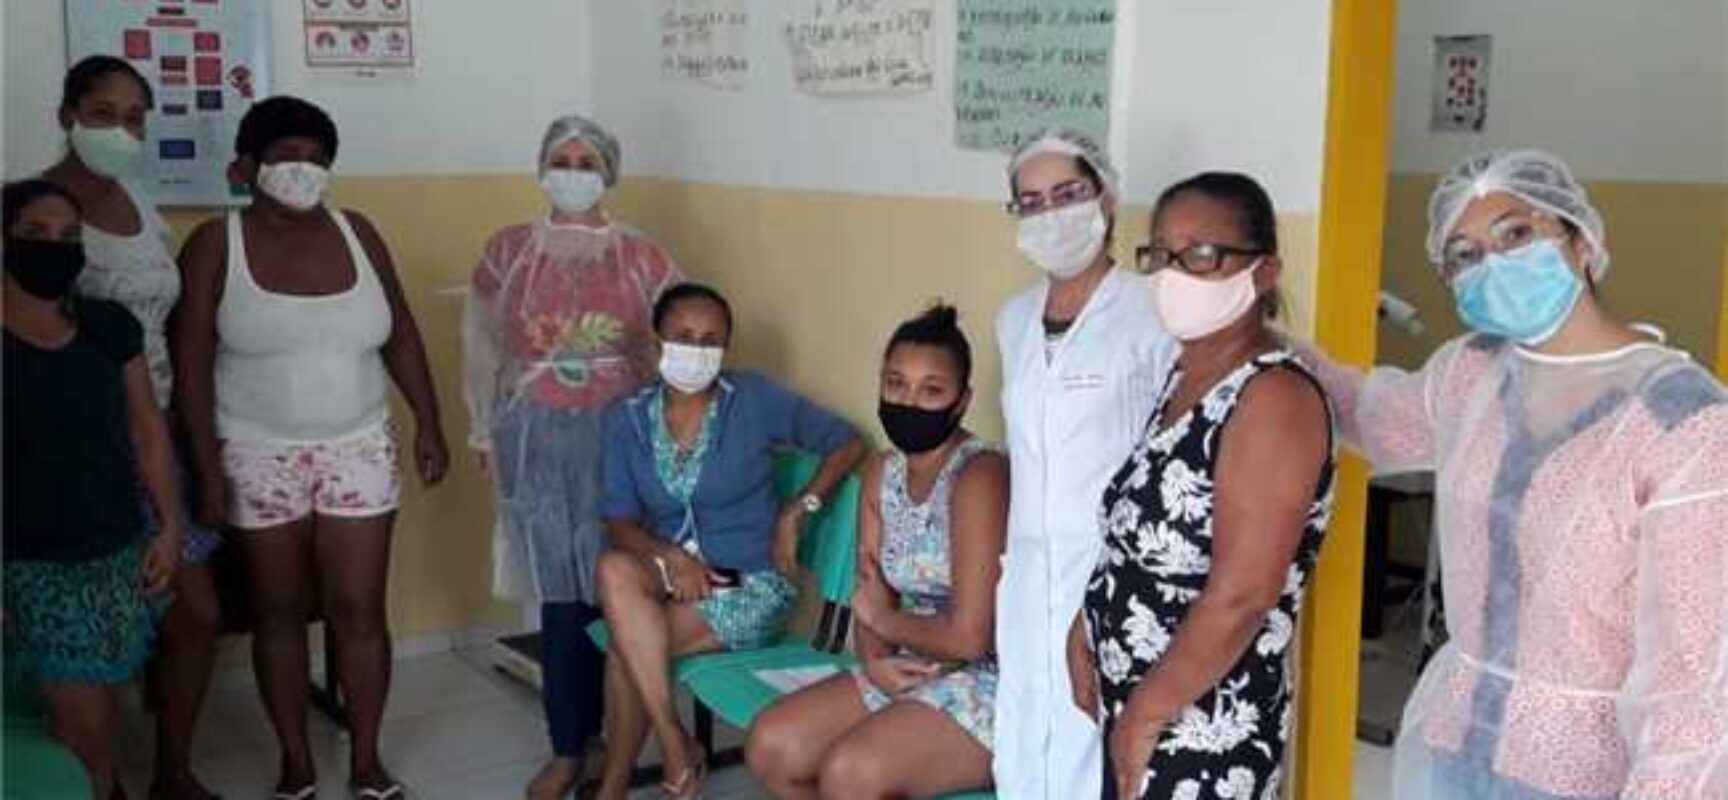 Saúde divulga balanço semanal da vacinação contra a Covid-19 na zona rural de Ilhéus